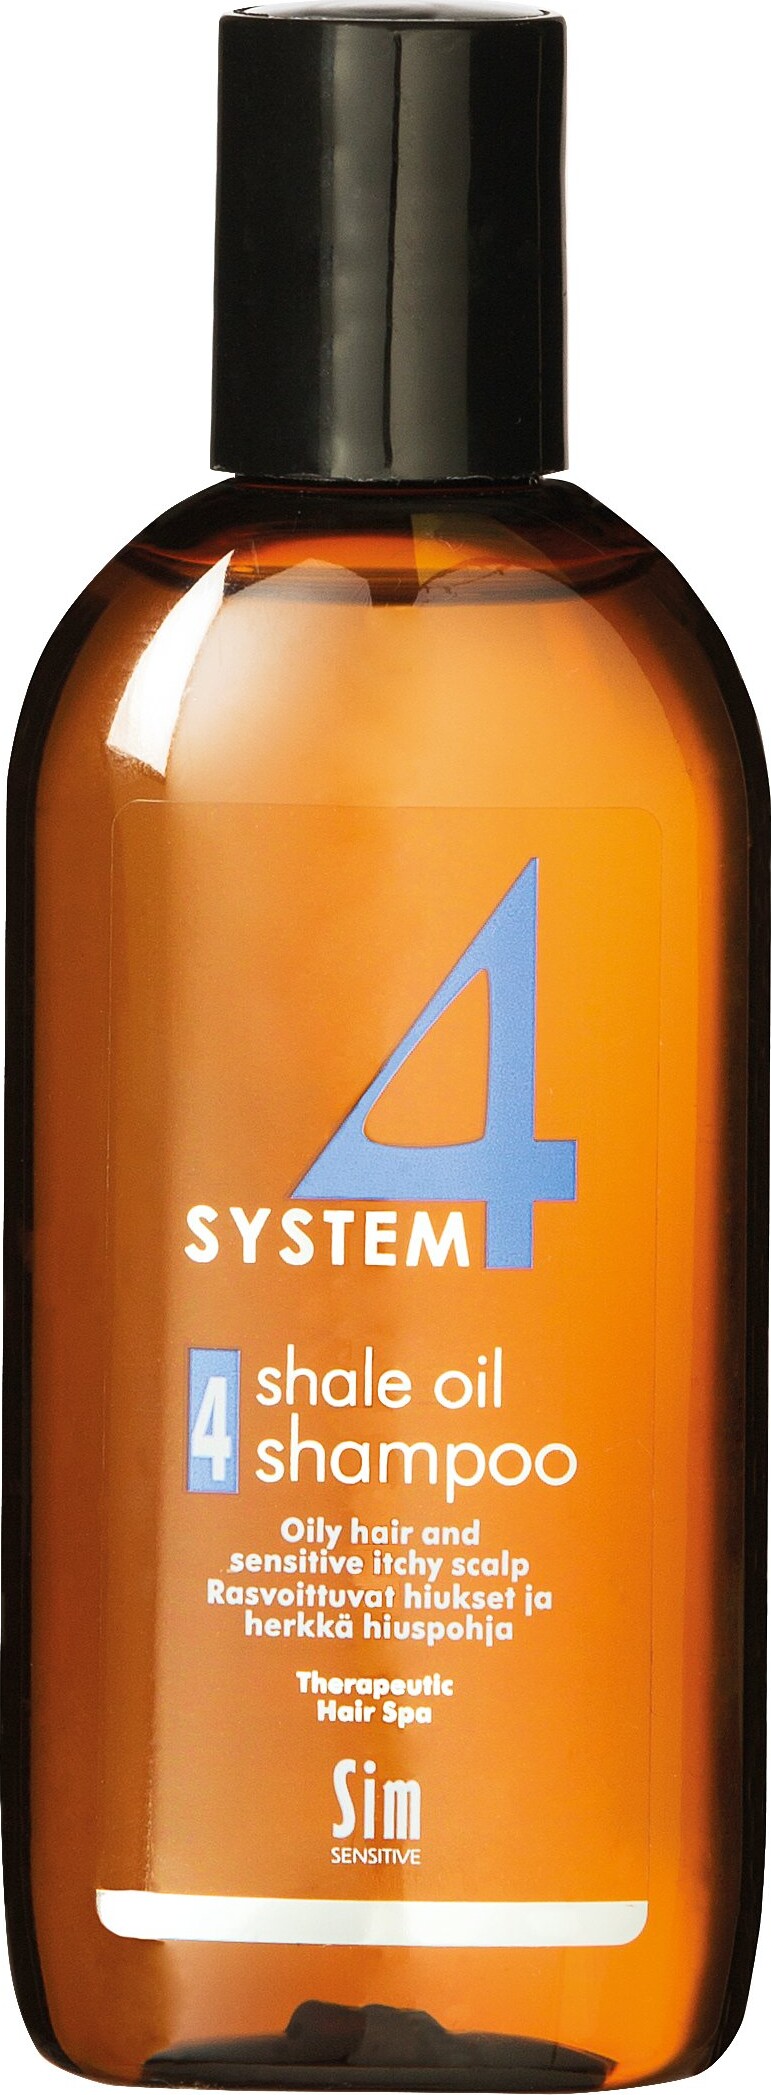 System 4 - Shale Oil Shampoo 4 - Ml | Se tilbud køb Gucca.dk